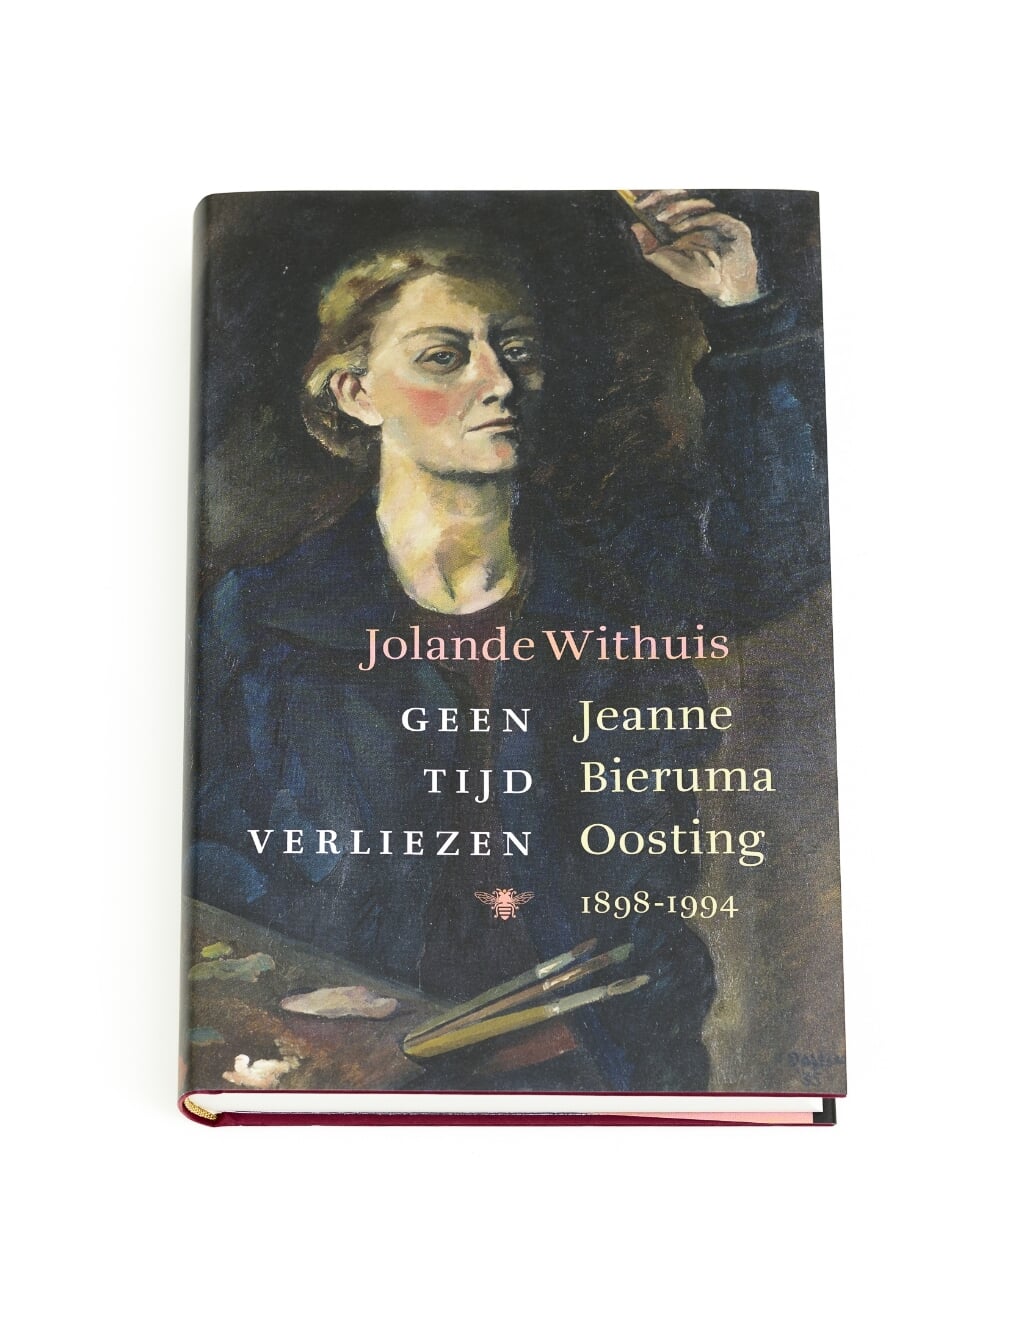 Omslag boek 'Geen tijd verliezen' Jeanne Bieruma Oosting (1898-1994) geschreven door Jolande Withuis. Foto: PR